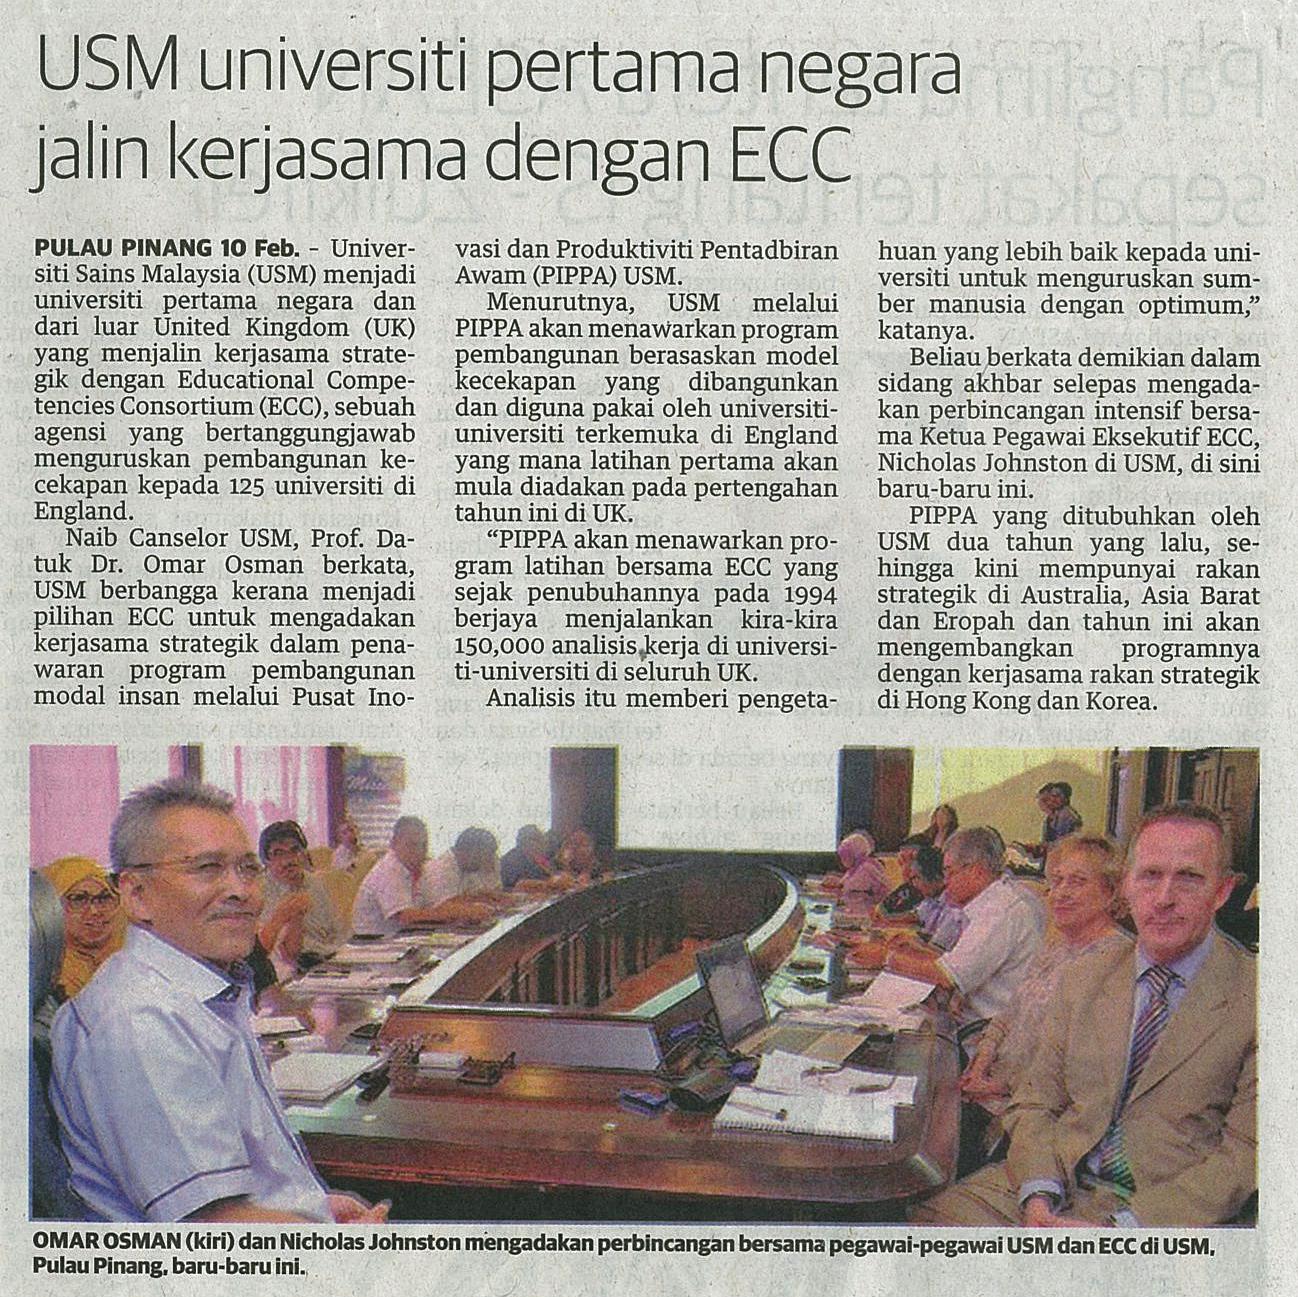 11 Februari 2015 USM universiti pertama negara jalin kerjasama dengan ECC Utusan